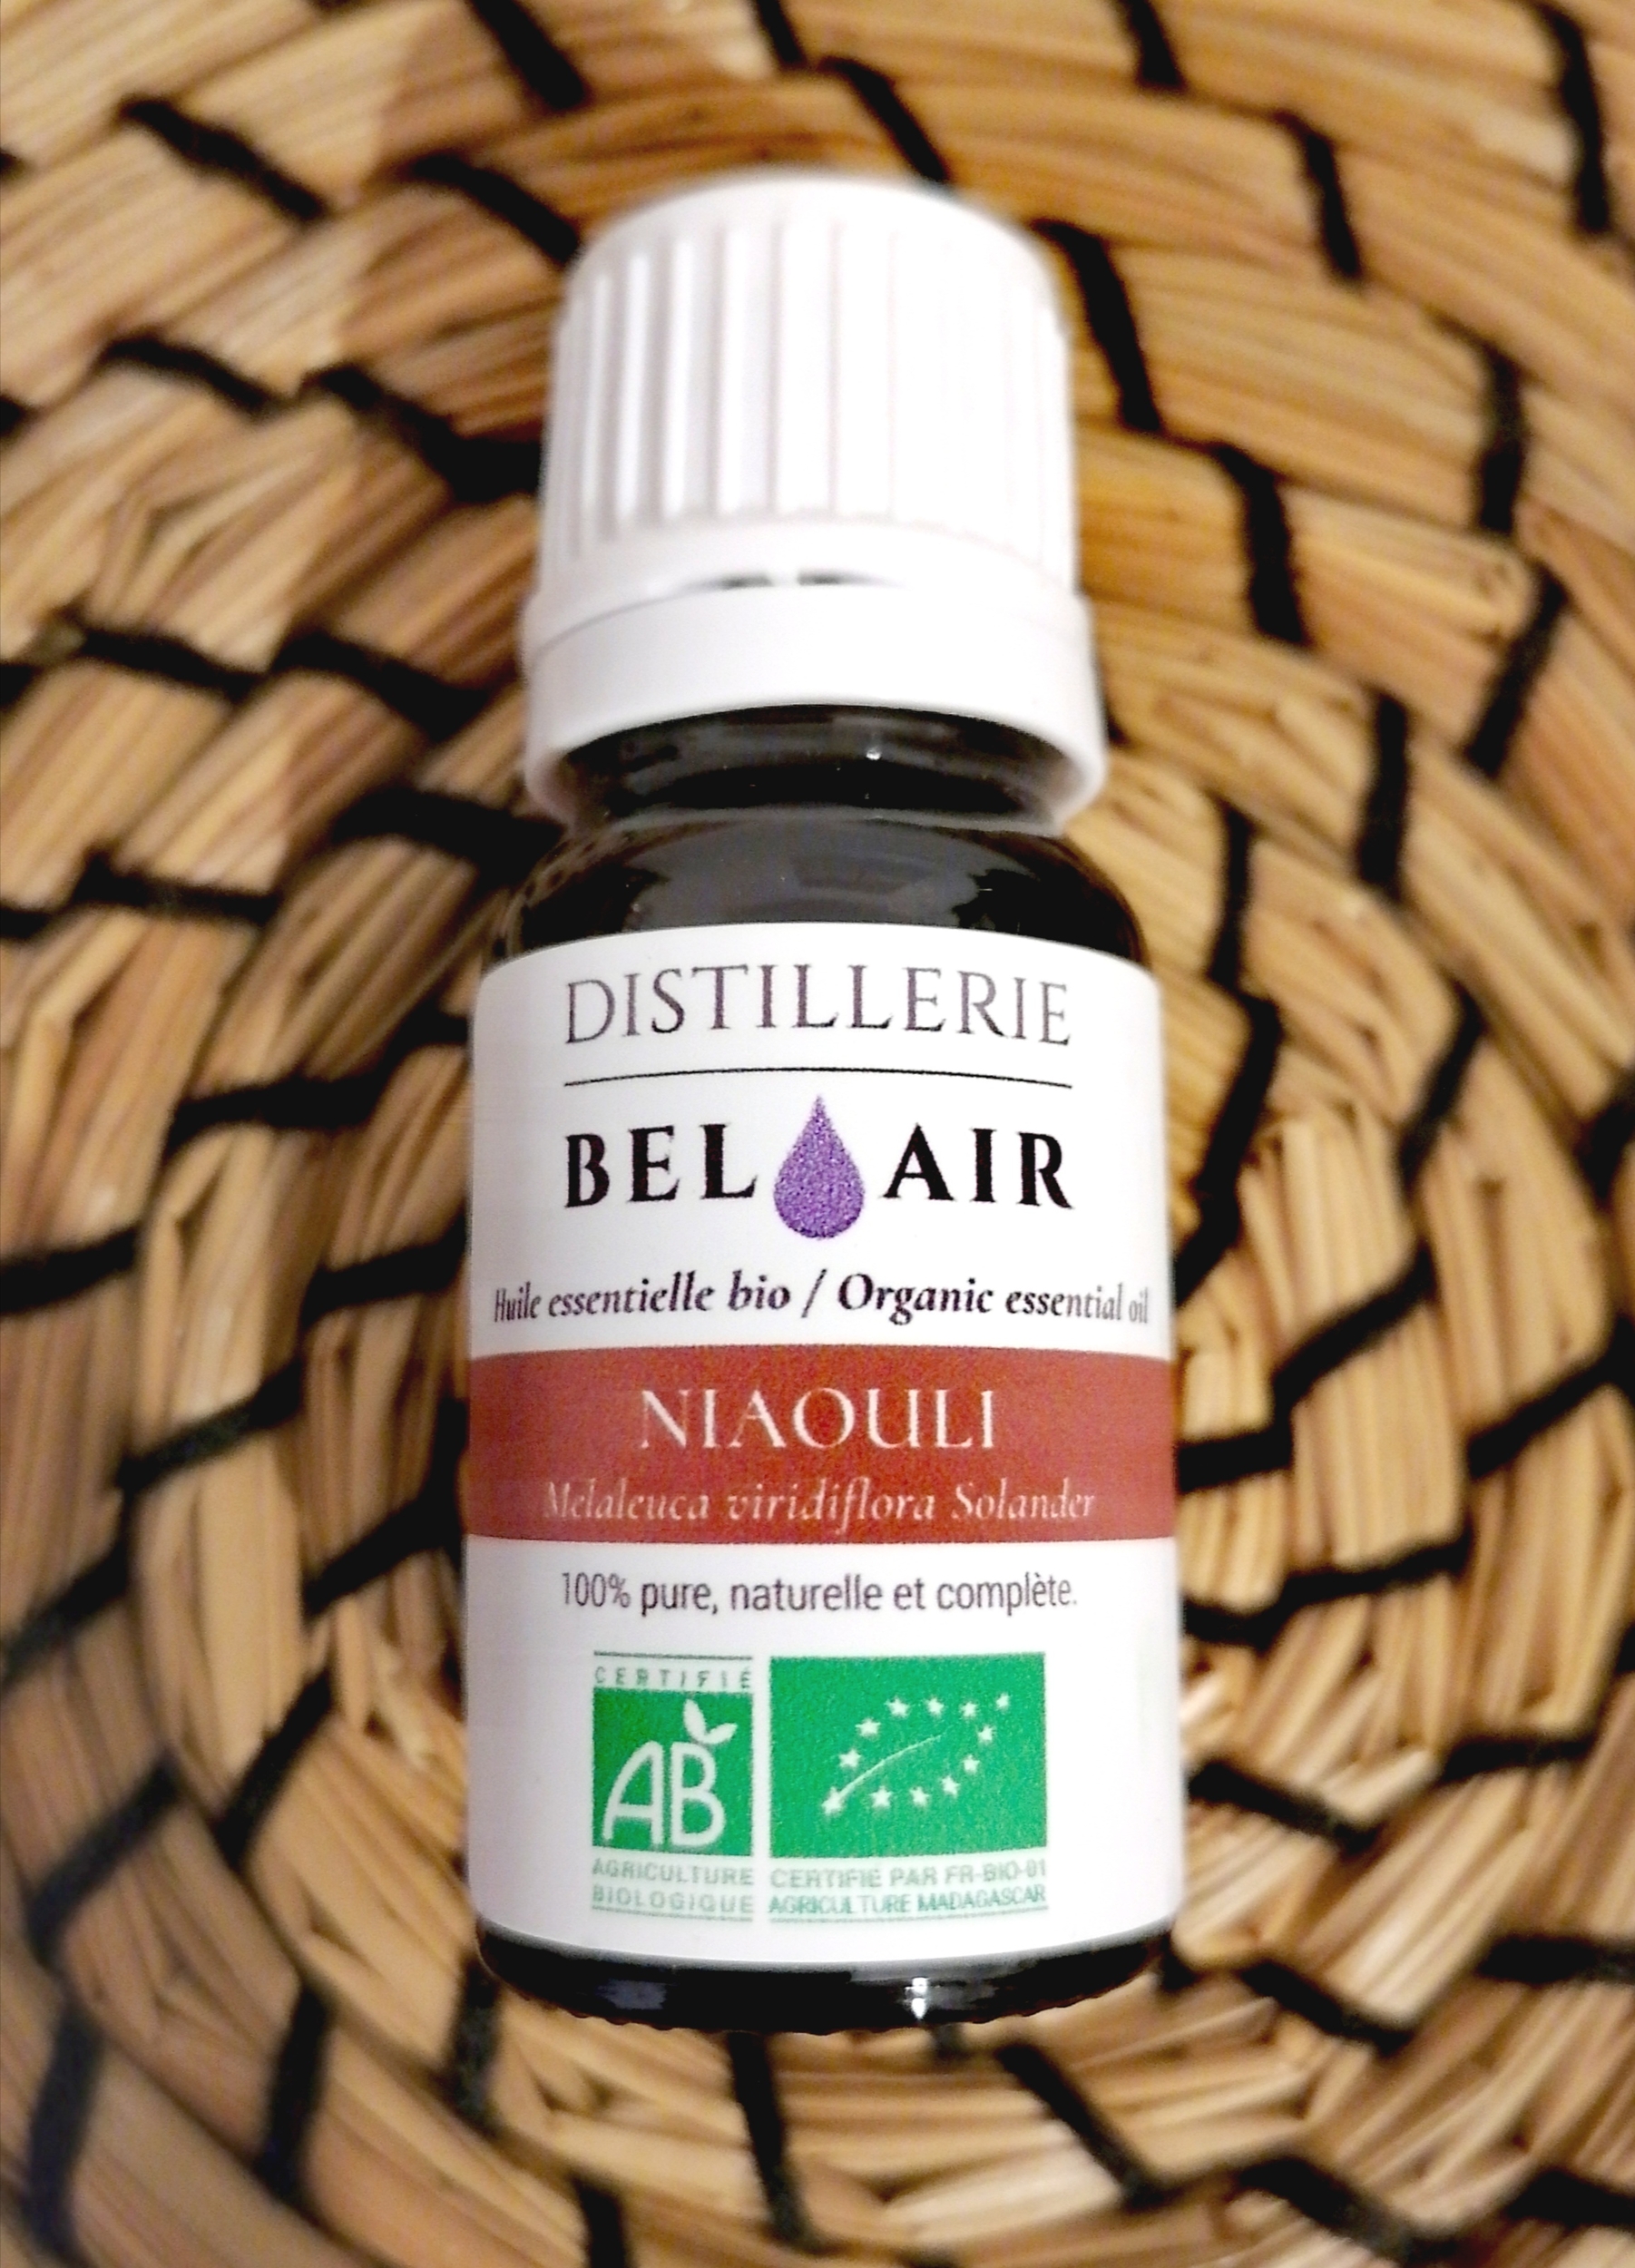 he-Niaouli-huile-essentielle-bel-air-bio-herboristerie